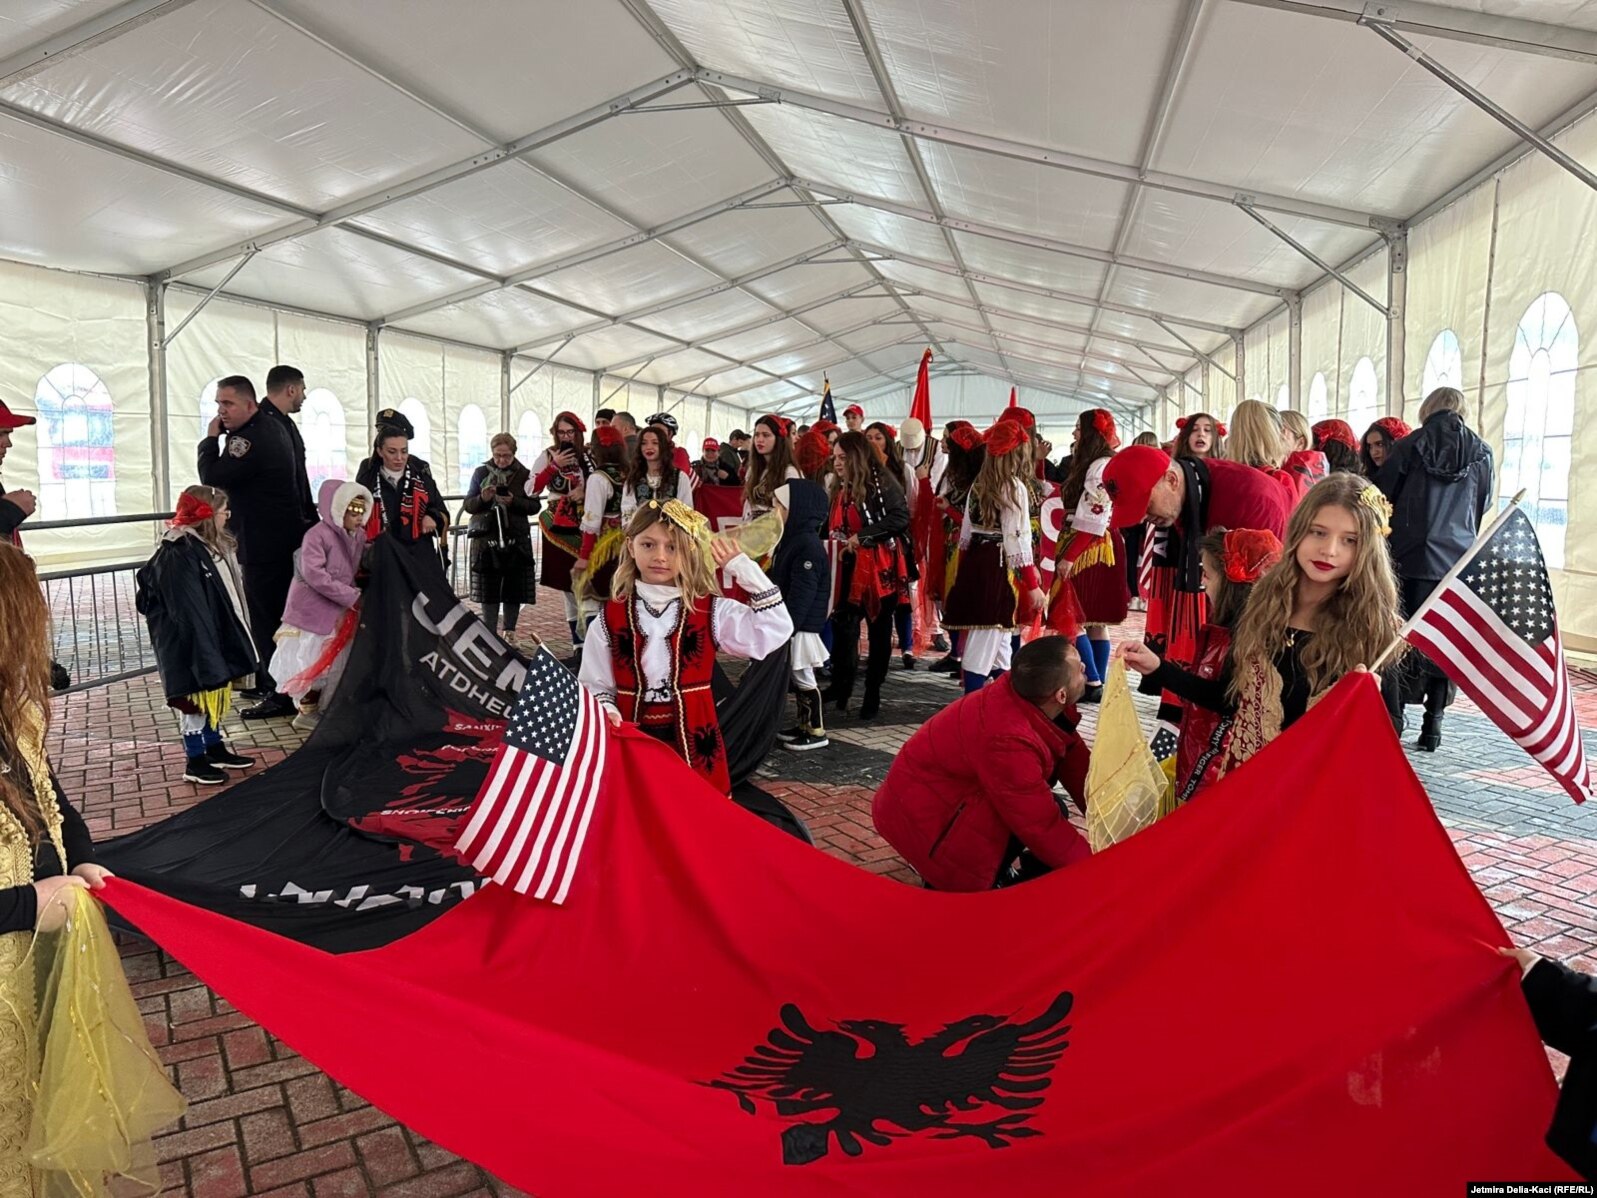 Shqiptarë nga gjithë bota parakaluan në bulevardin “Dëshmorët e Kombit” në Tiranë për nder të 28 Nëntorit - Ditës së Pavarësisë së Shqipërisë.